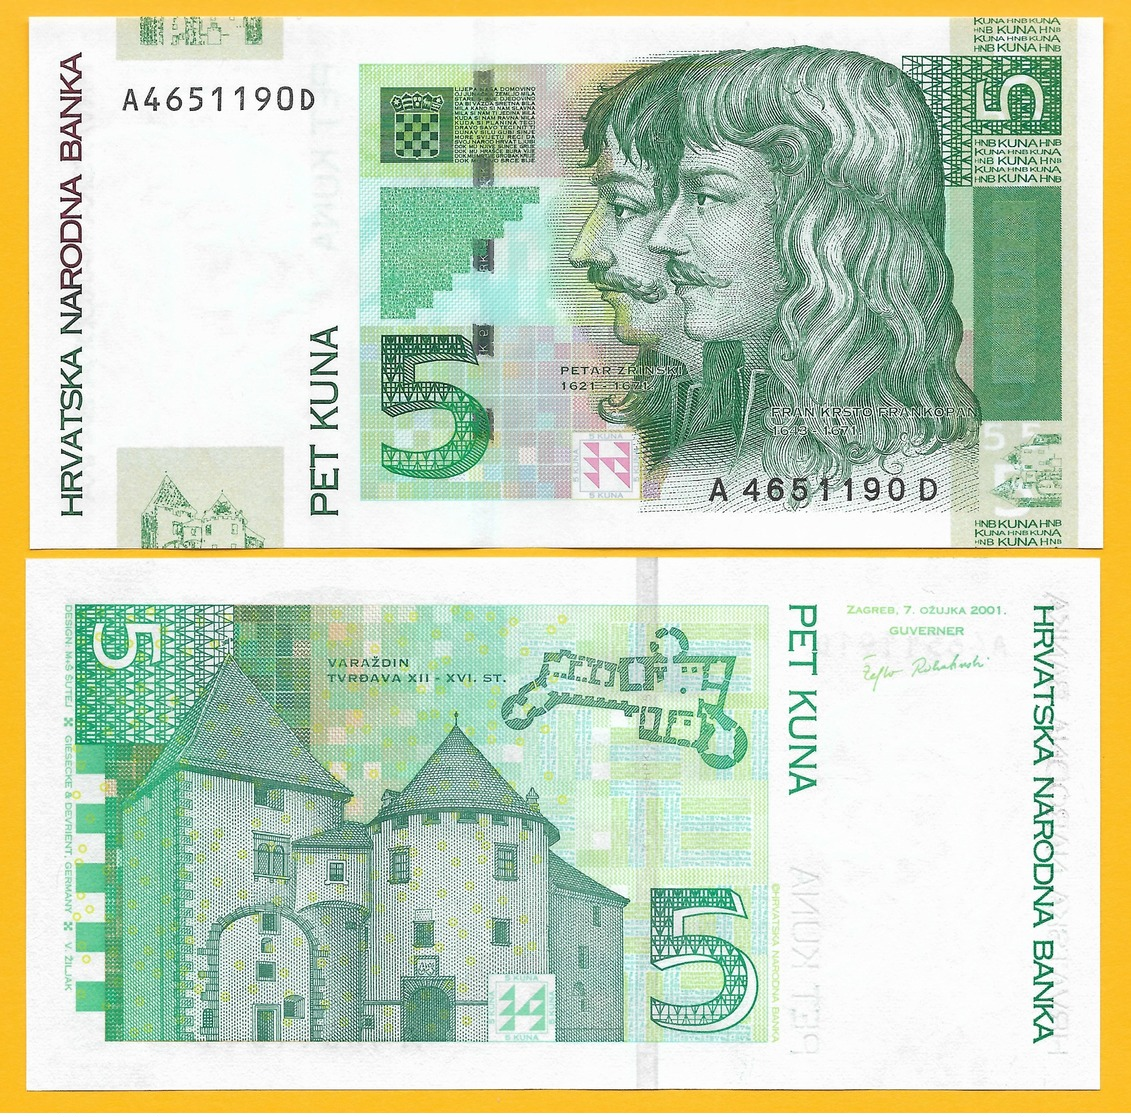 Croatia 5 Kuna P-37 2001 UNC Banknote - Croatia